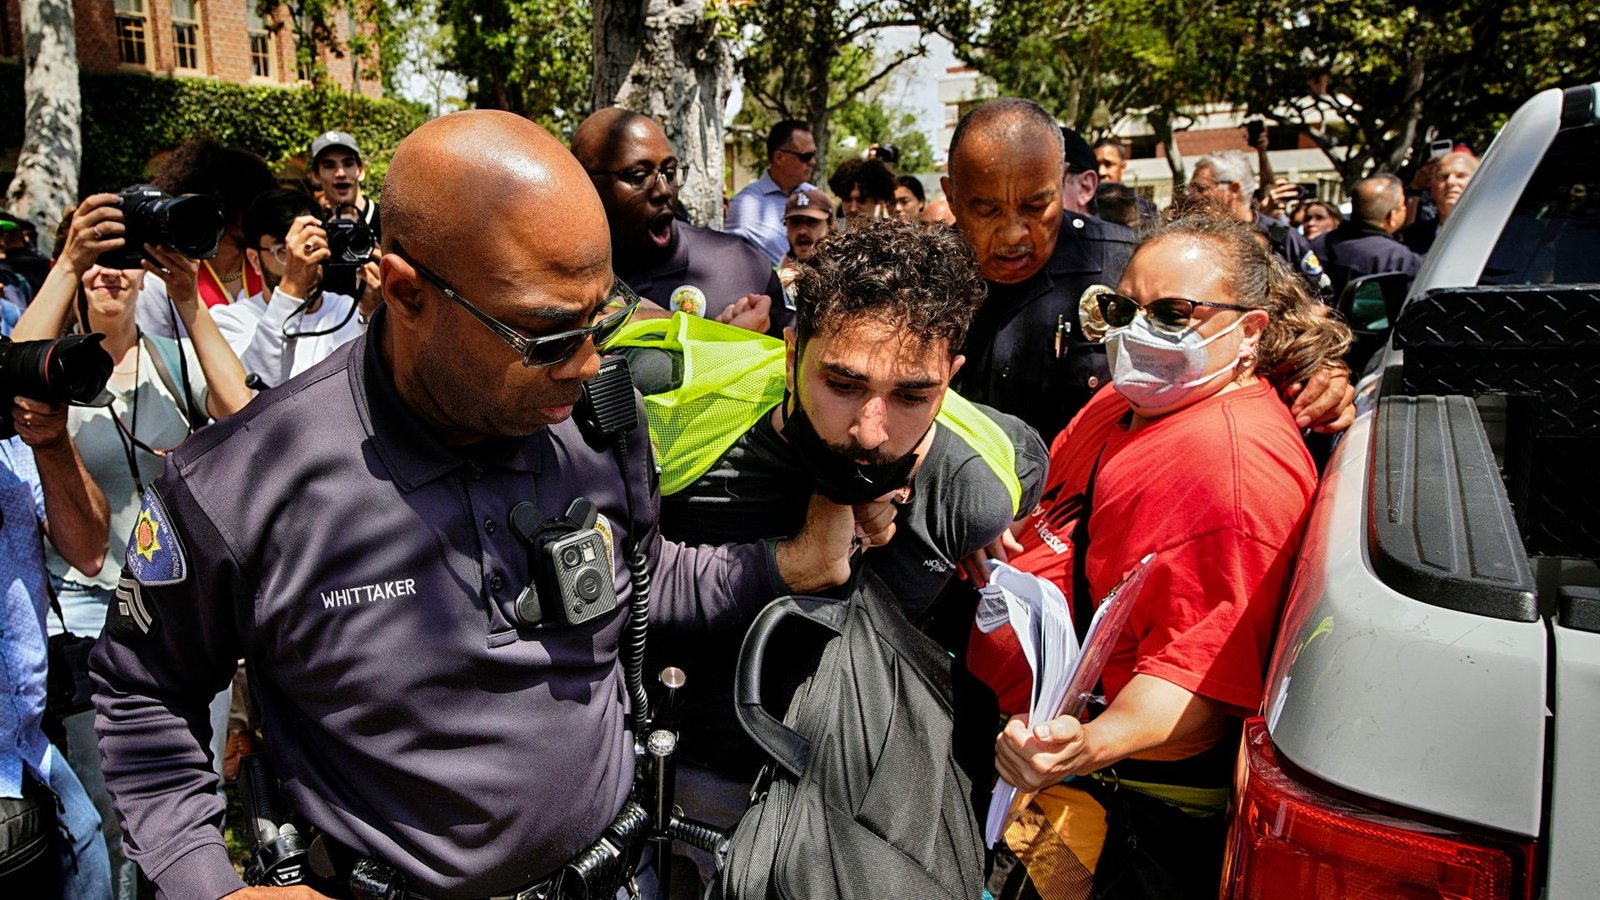 Ein Demonstrant der University of Southern California wird während einer pro-palästinensischen Besetzung des Alumni-Parks in Los Angeles von Beamten des USC Department of Public Safety festgehalten.Foto: Richard Vogel/AP/dpa